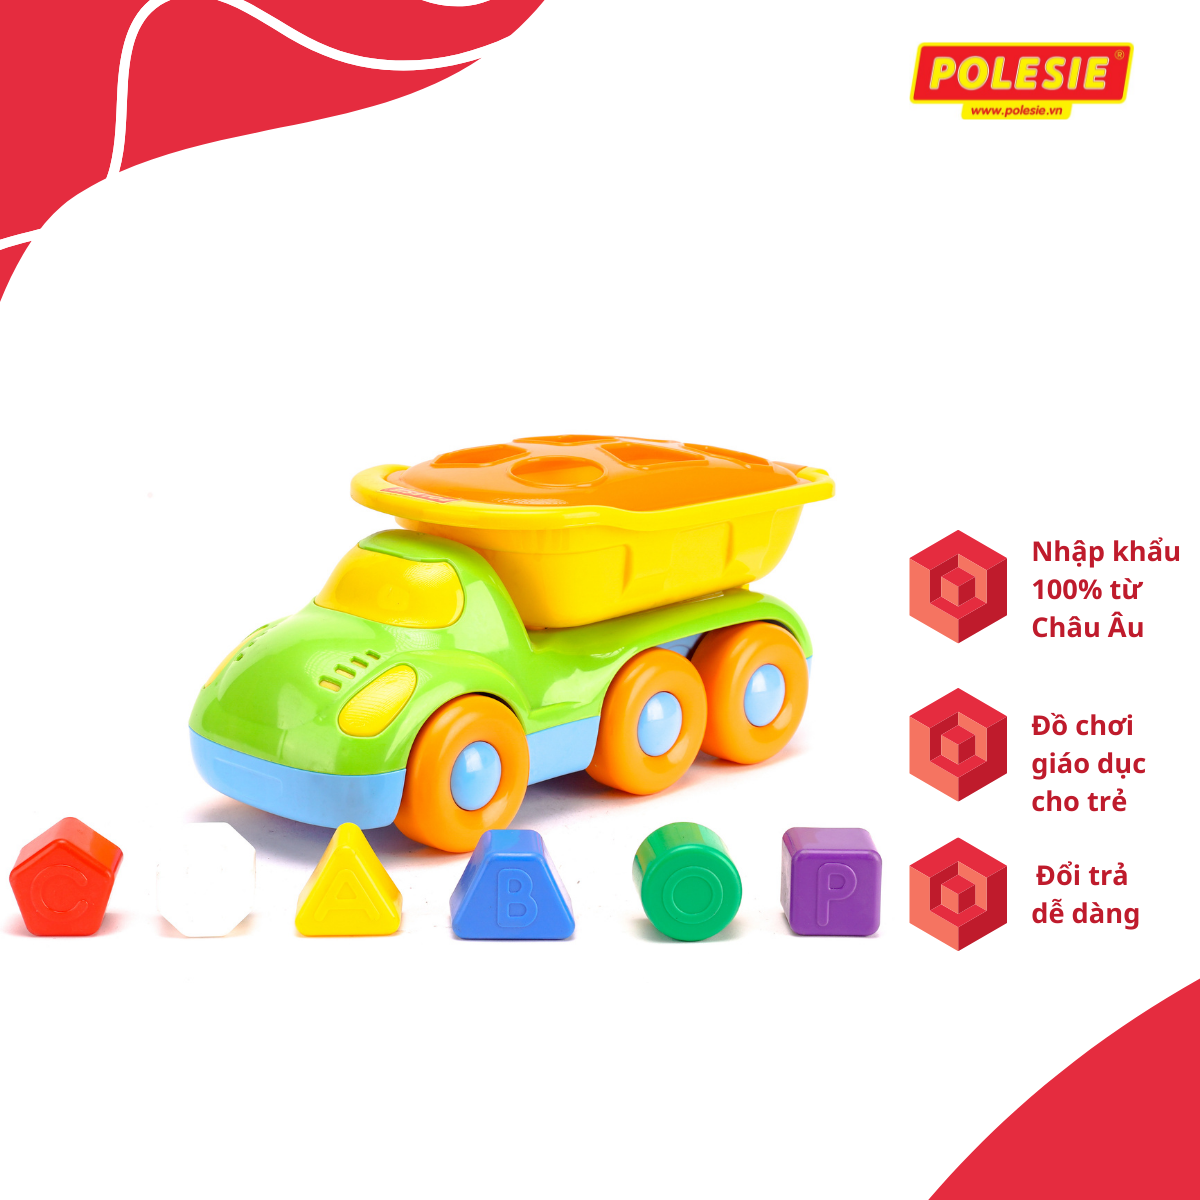 Bộ đồ chơi thả hình khối - Xe tải Buddy Polesie 48363 - Hàng chính hãng nhập khẩu châu âu